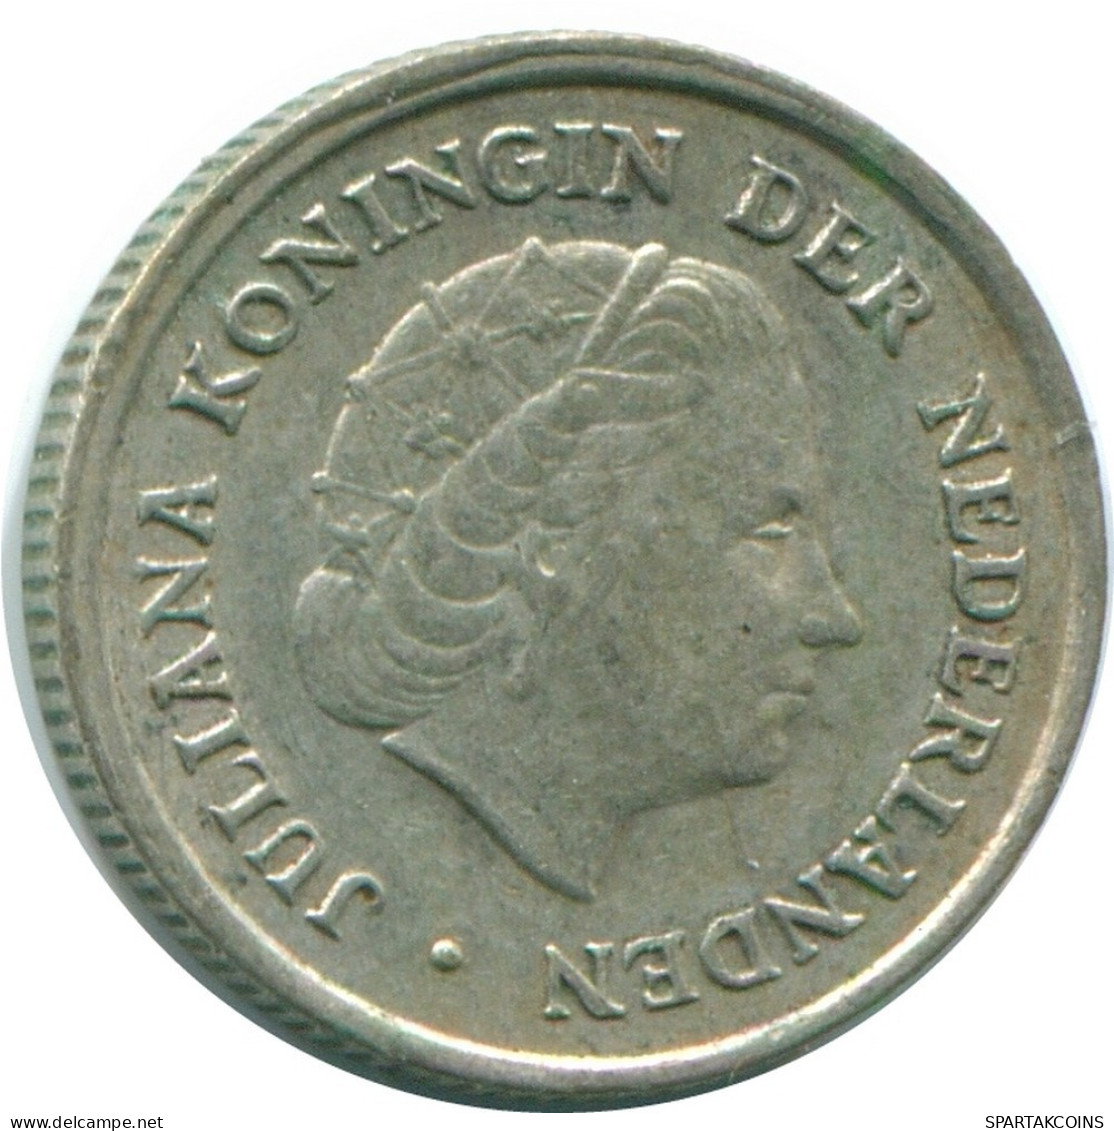 1/10 GULDEN 1970 NIEDERLÄNDISCHE ANTILLEN SILBER Koloniale Münze #NL13113.3.D.A - Antilles Néerlandaises